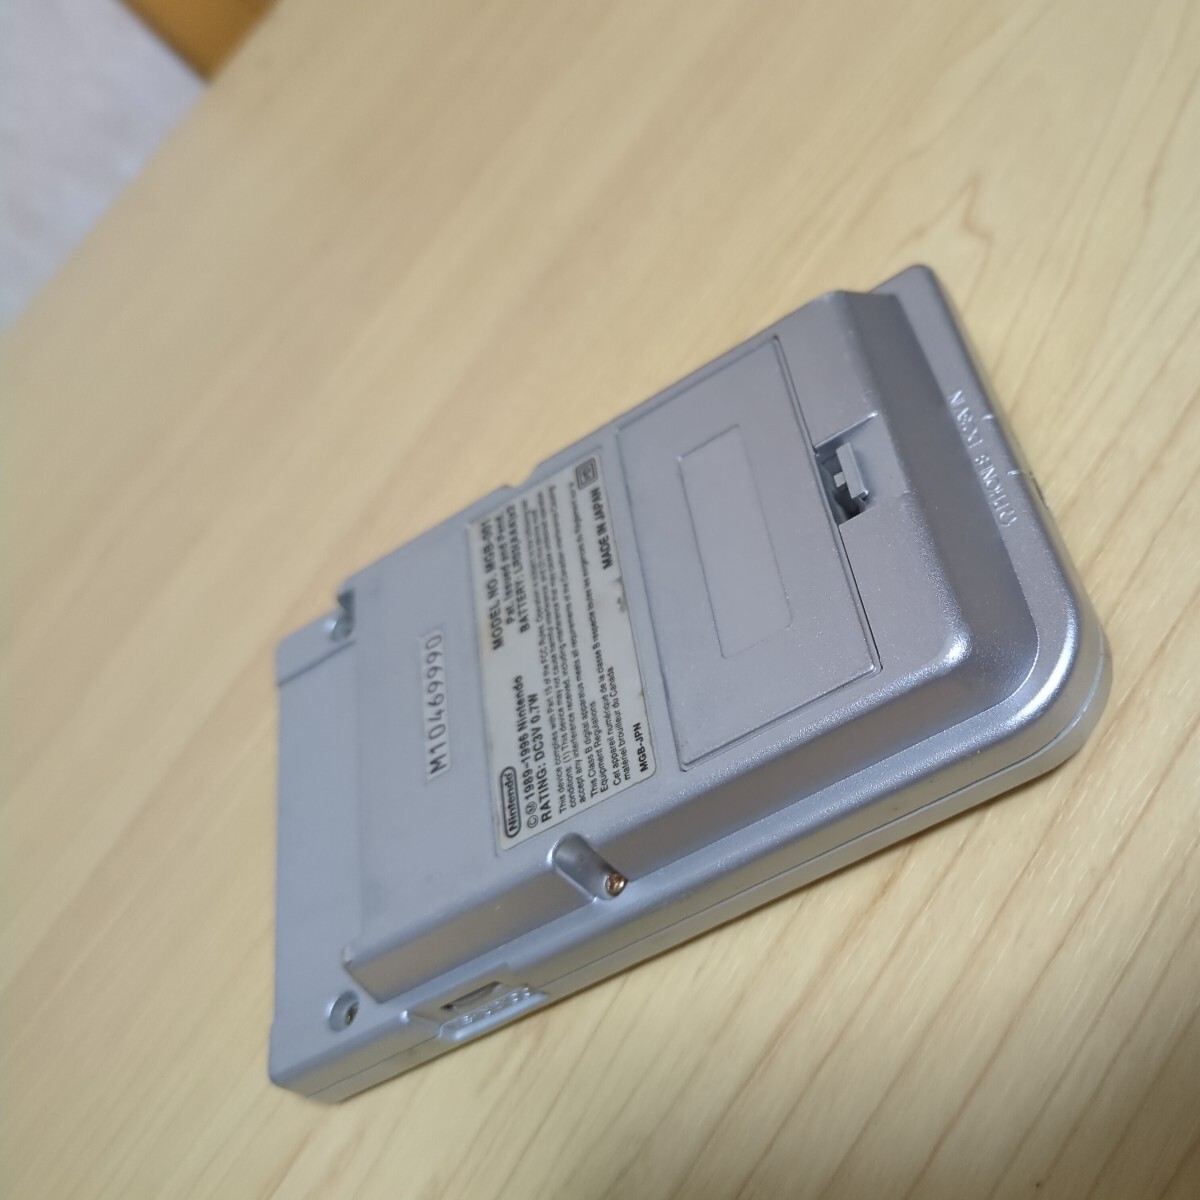  бесплатная доставка Game Boy карман корпус (MGB-001/ серебряный ) GB рабочее состояние подтверждено Nintendo nintendo 